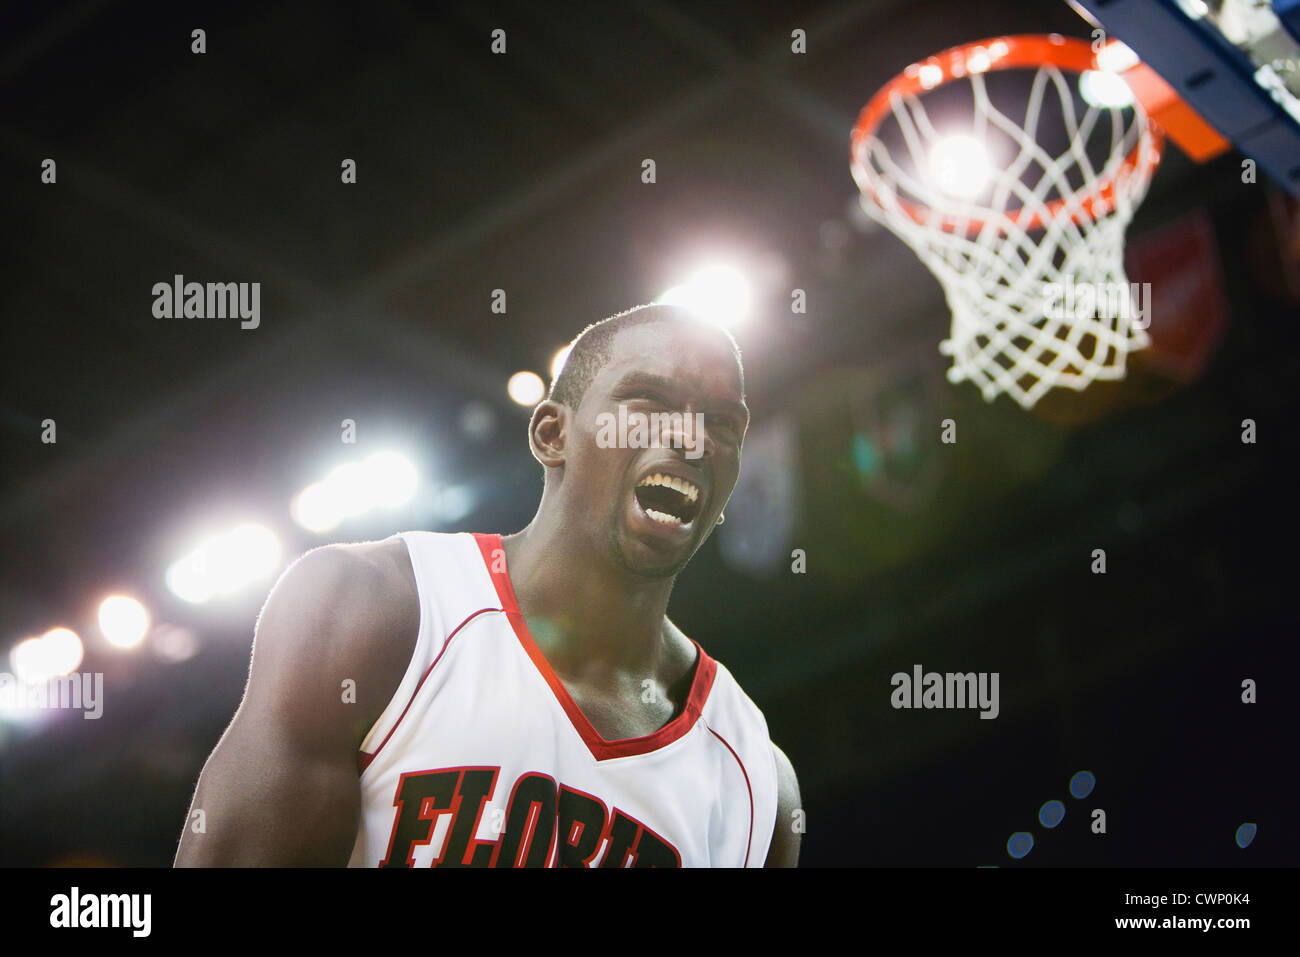 Basketball player shouting Stock Photo